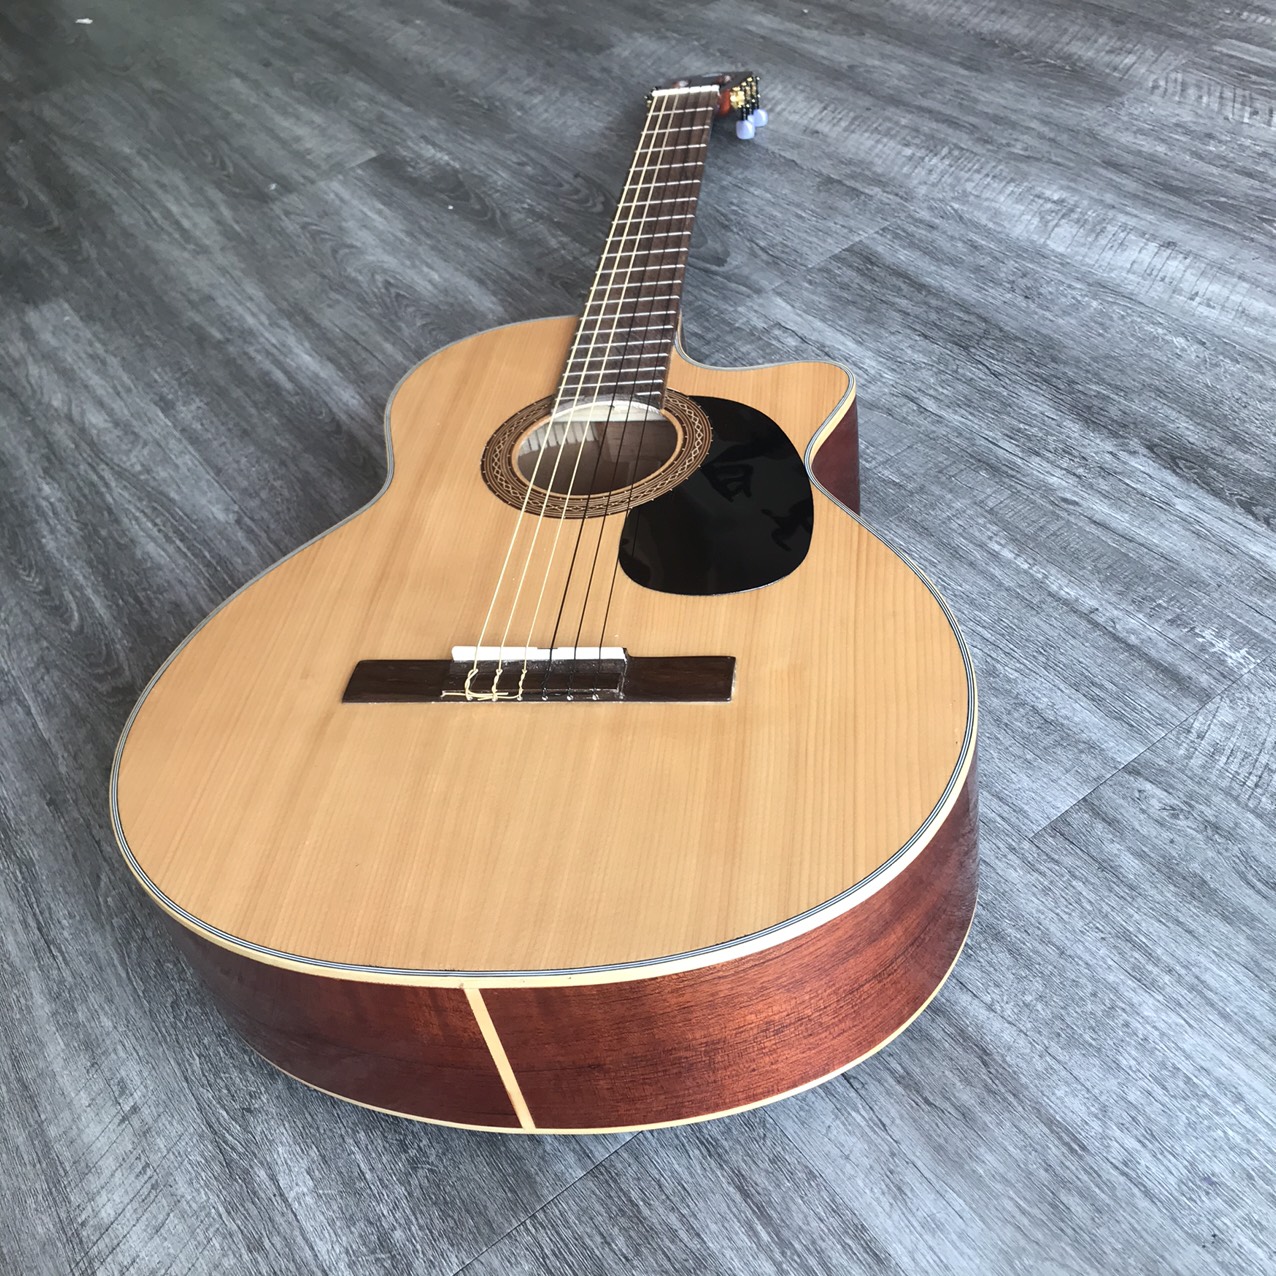 Đàn guitar classic gỗ nguyên tấm có ty chống cong - GTSVSG âm bao ấm